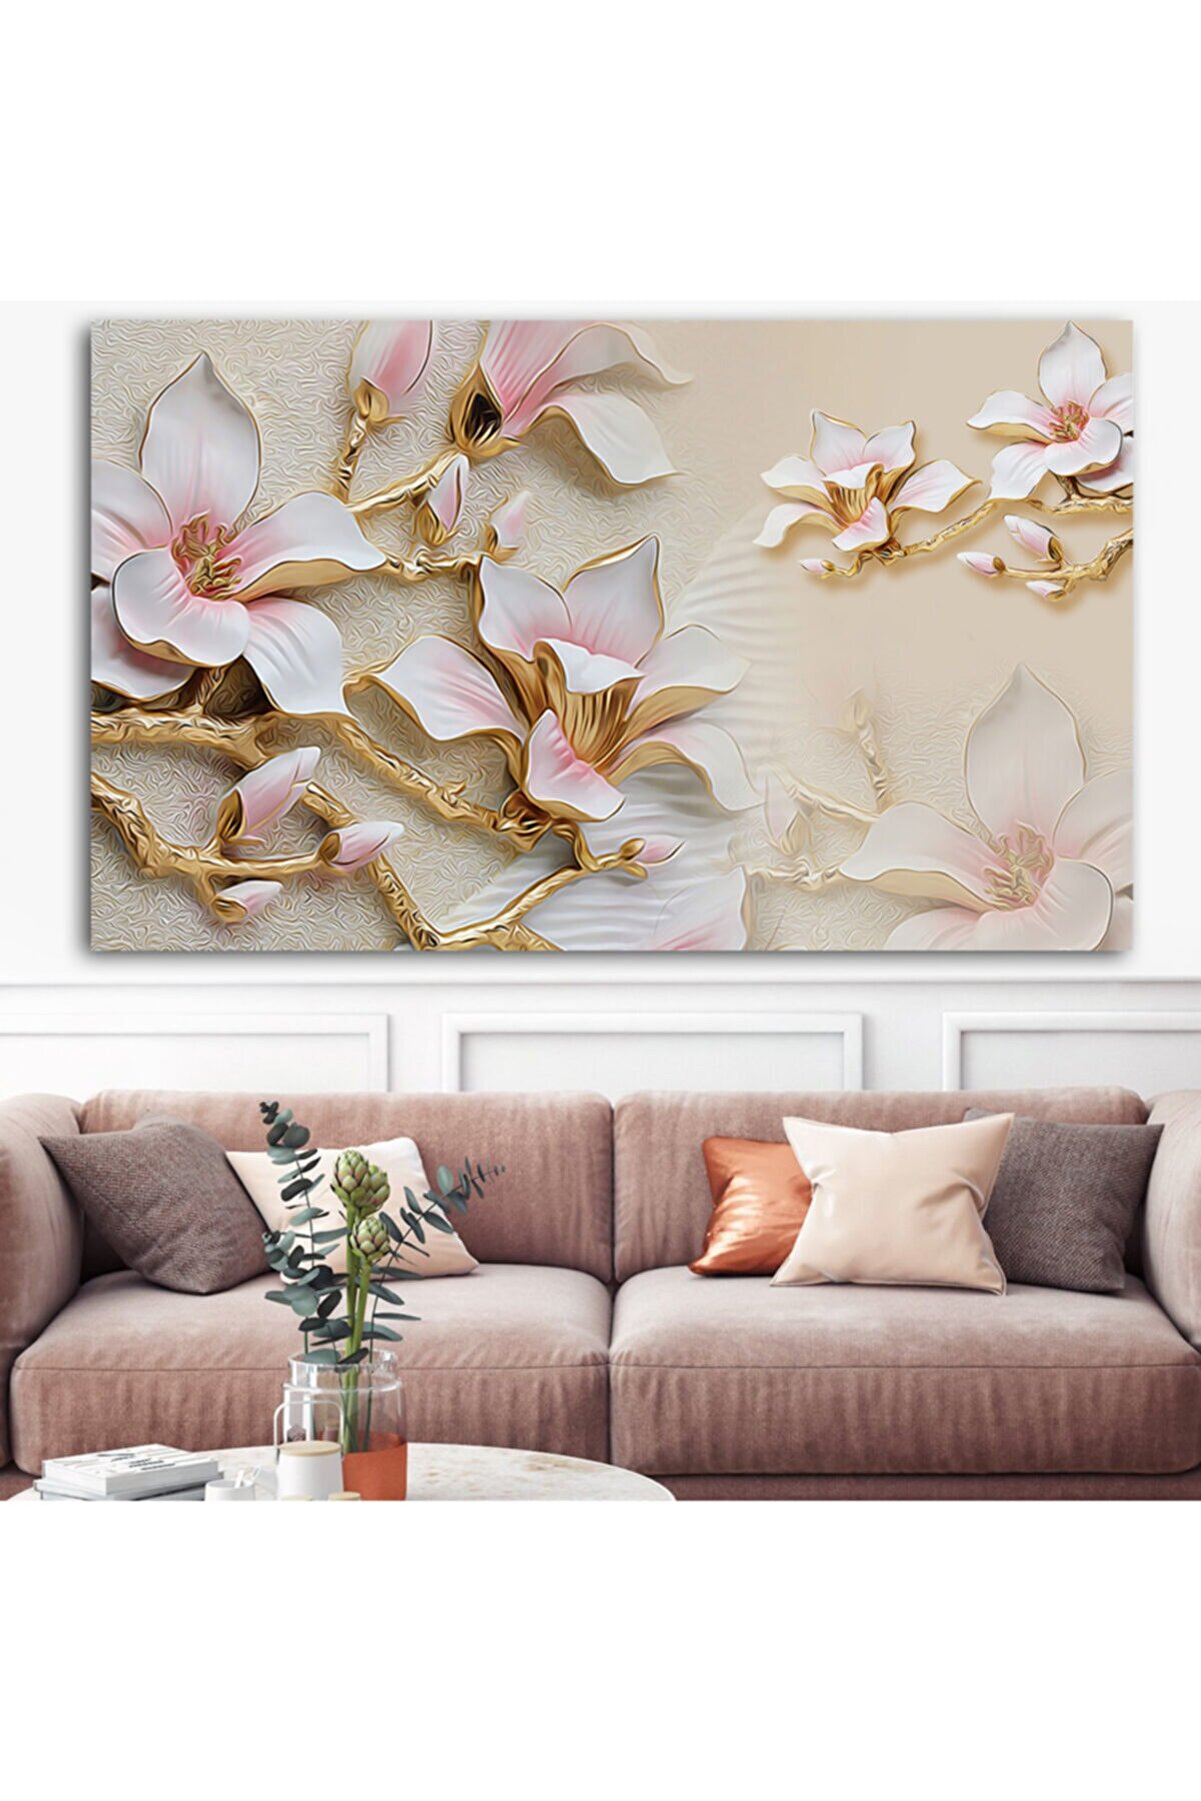 Sebenta Extra Dev Boyut Tasarım Çiçek Kanvas Tablo (100cm X 150cm)